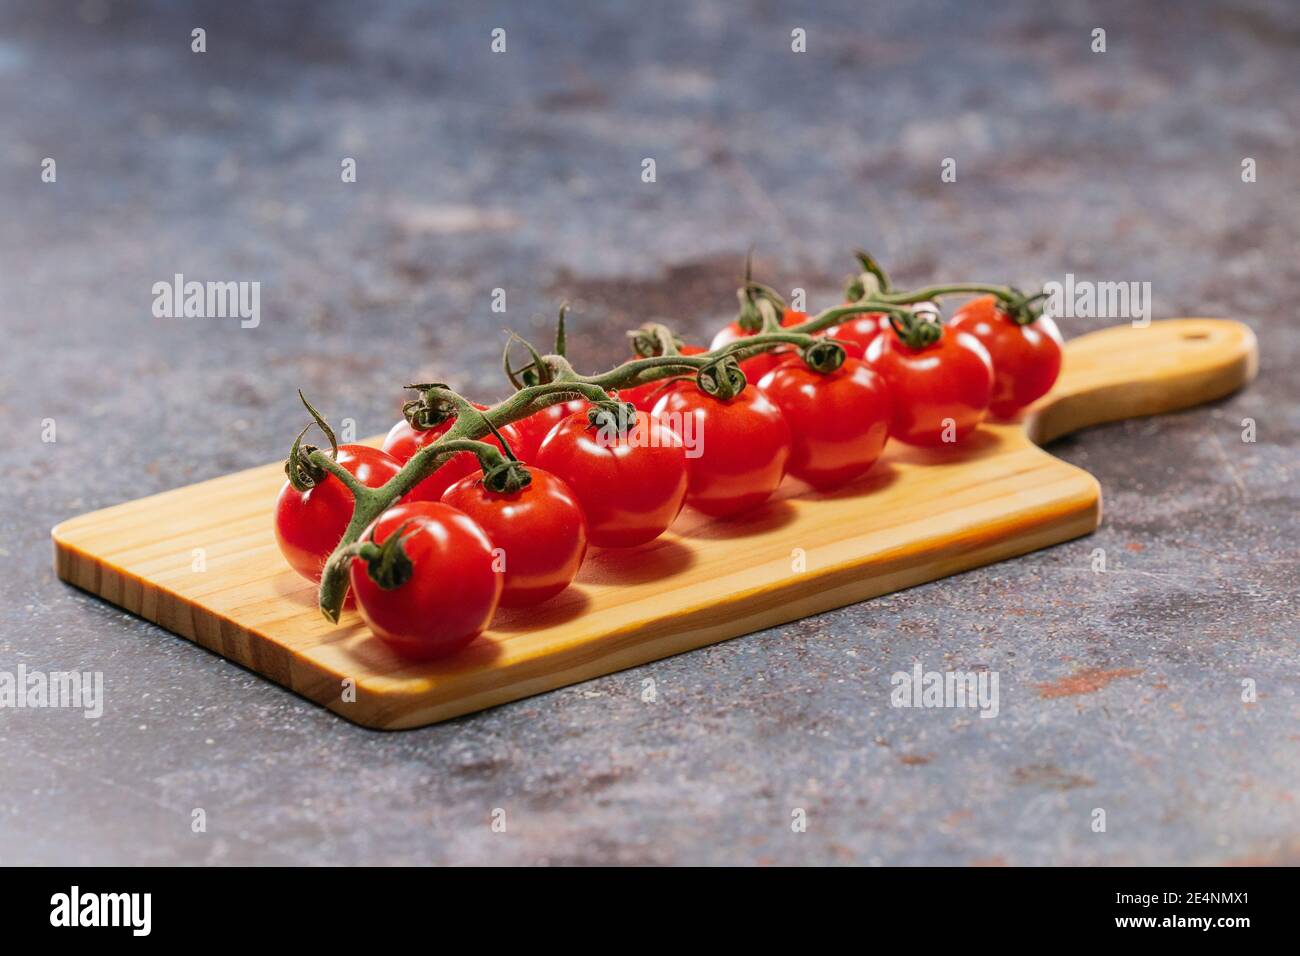 Alto sapore, bello nel colore e di piccole dimensioni i pomodori piccoli britannici giacenti sul tagliere Foto Stock